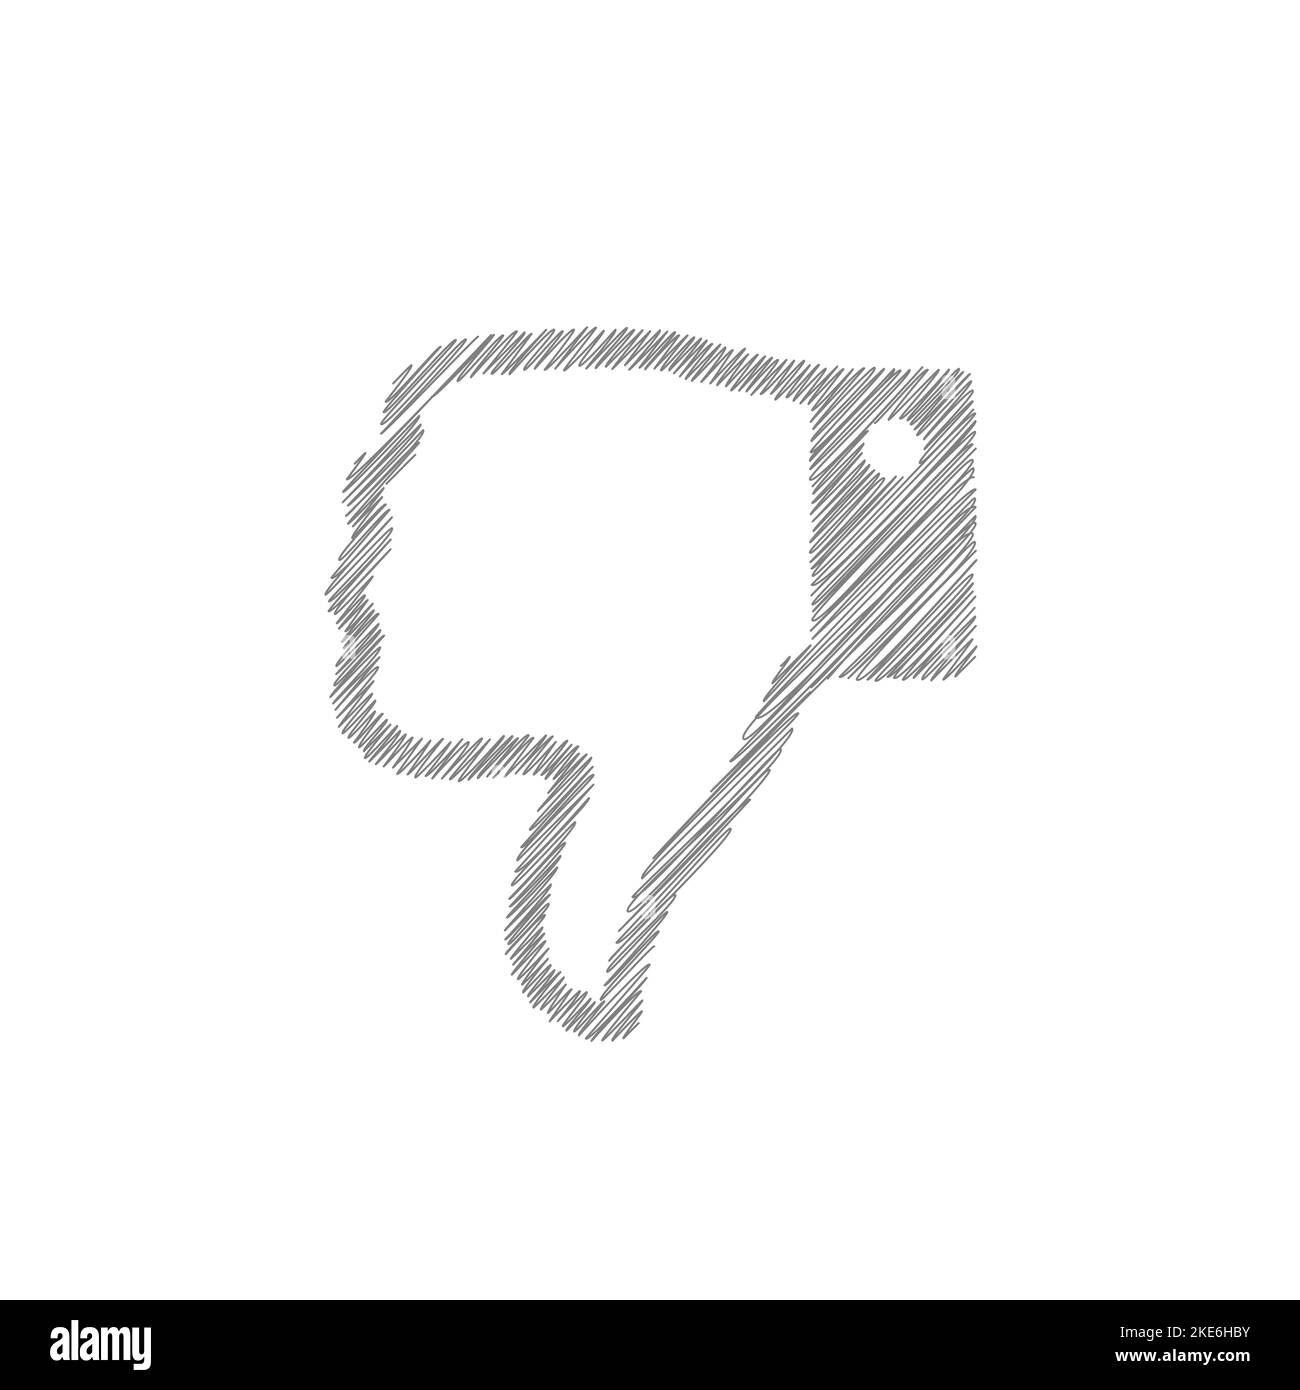 Dislike grey sketch vector icon. Hand drawn gesture symbol Stock Vector